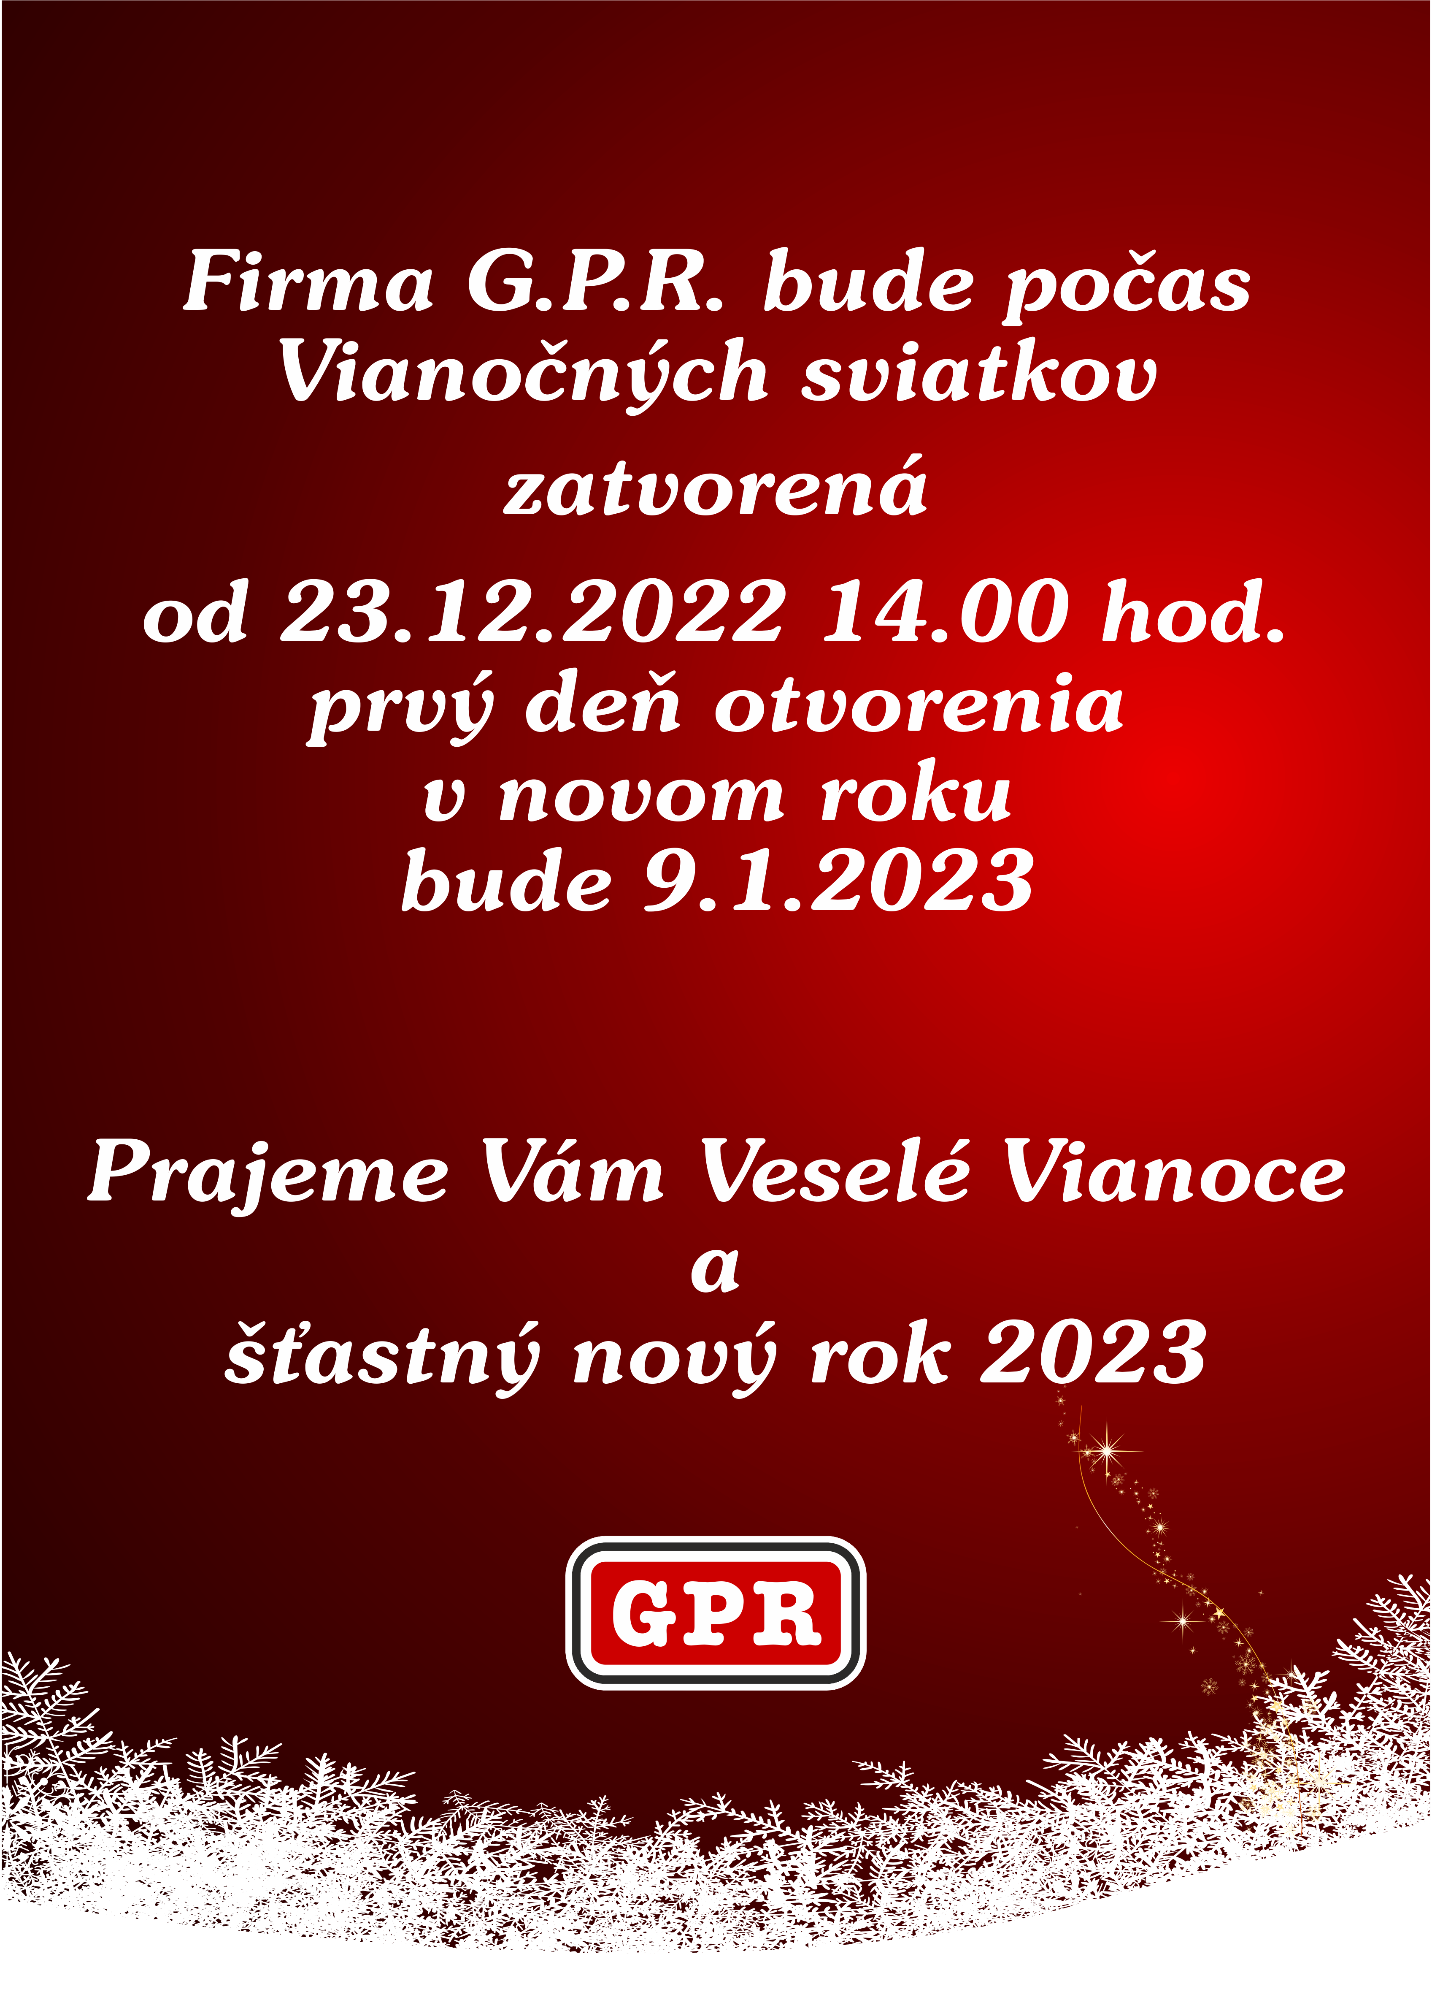 Vianoce GPR Otváracie hodiny.png